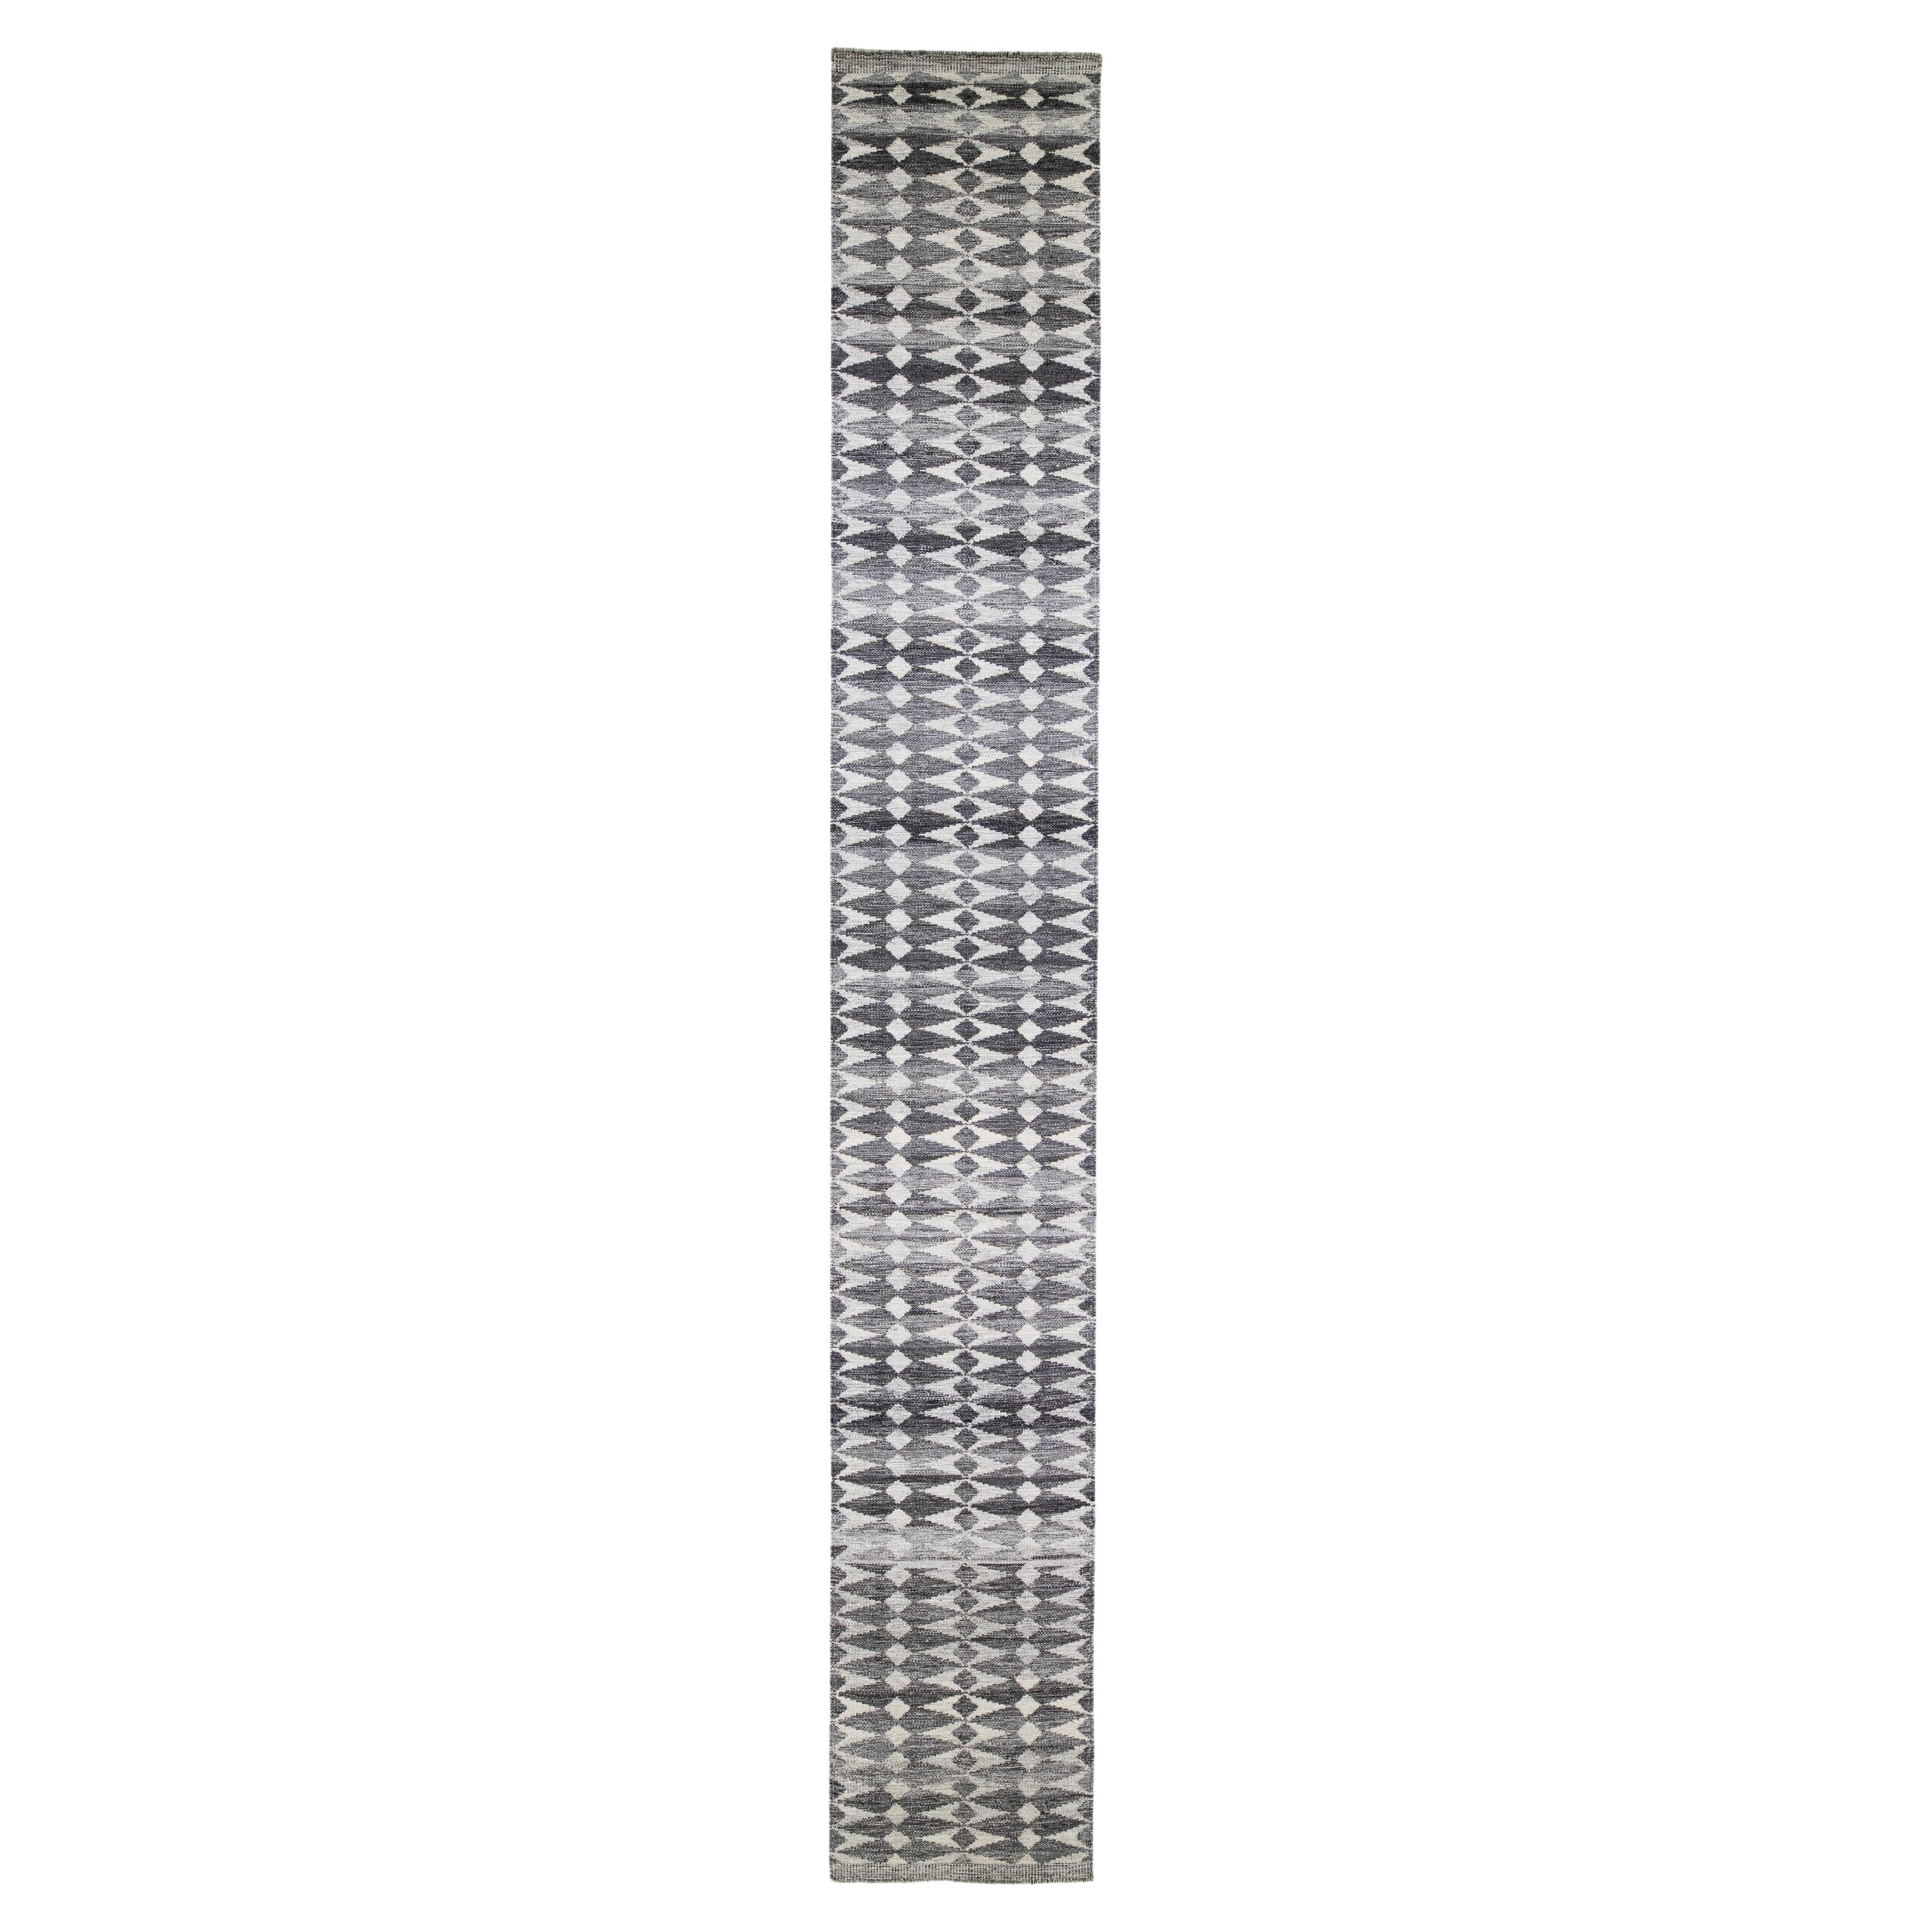 Tapis de couloir en laine gris moderne de style suédois fait à la main et conçu de manière abstraite